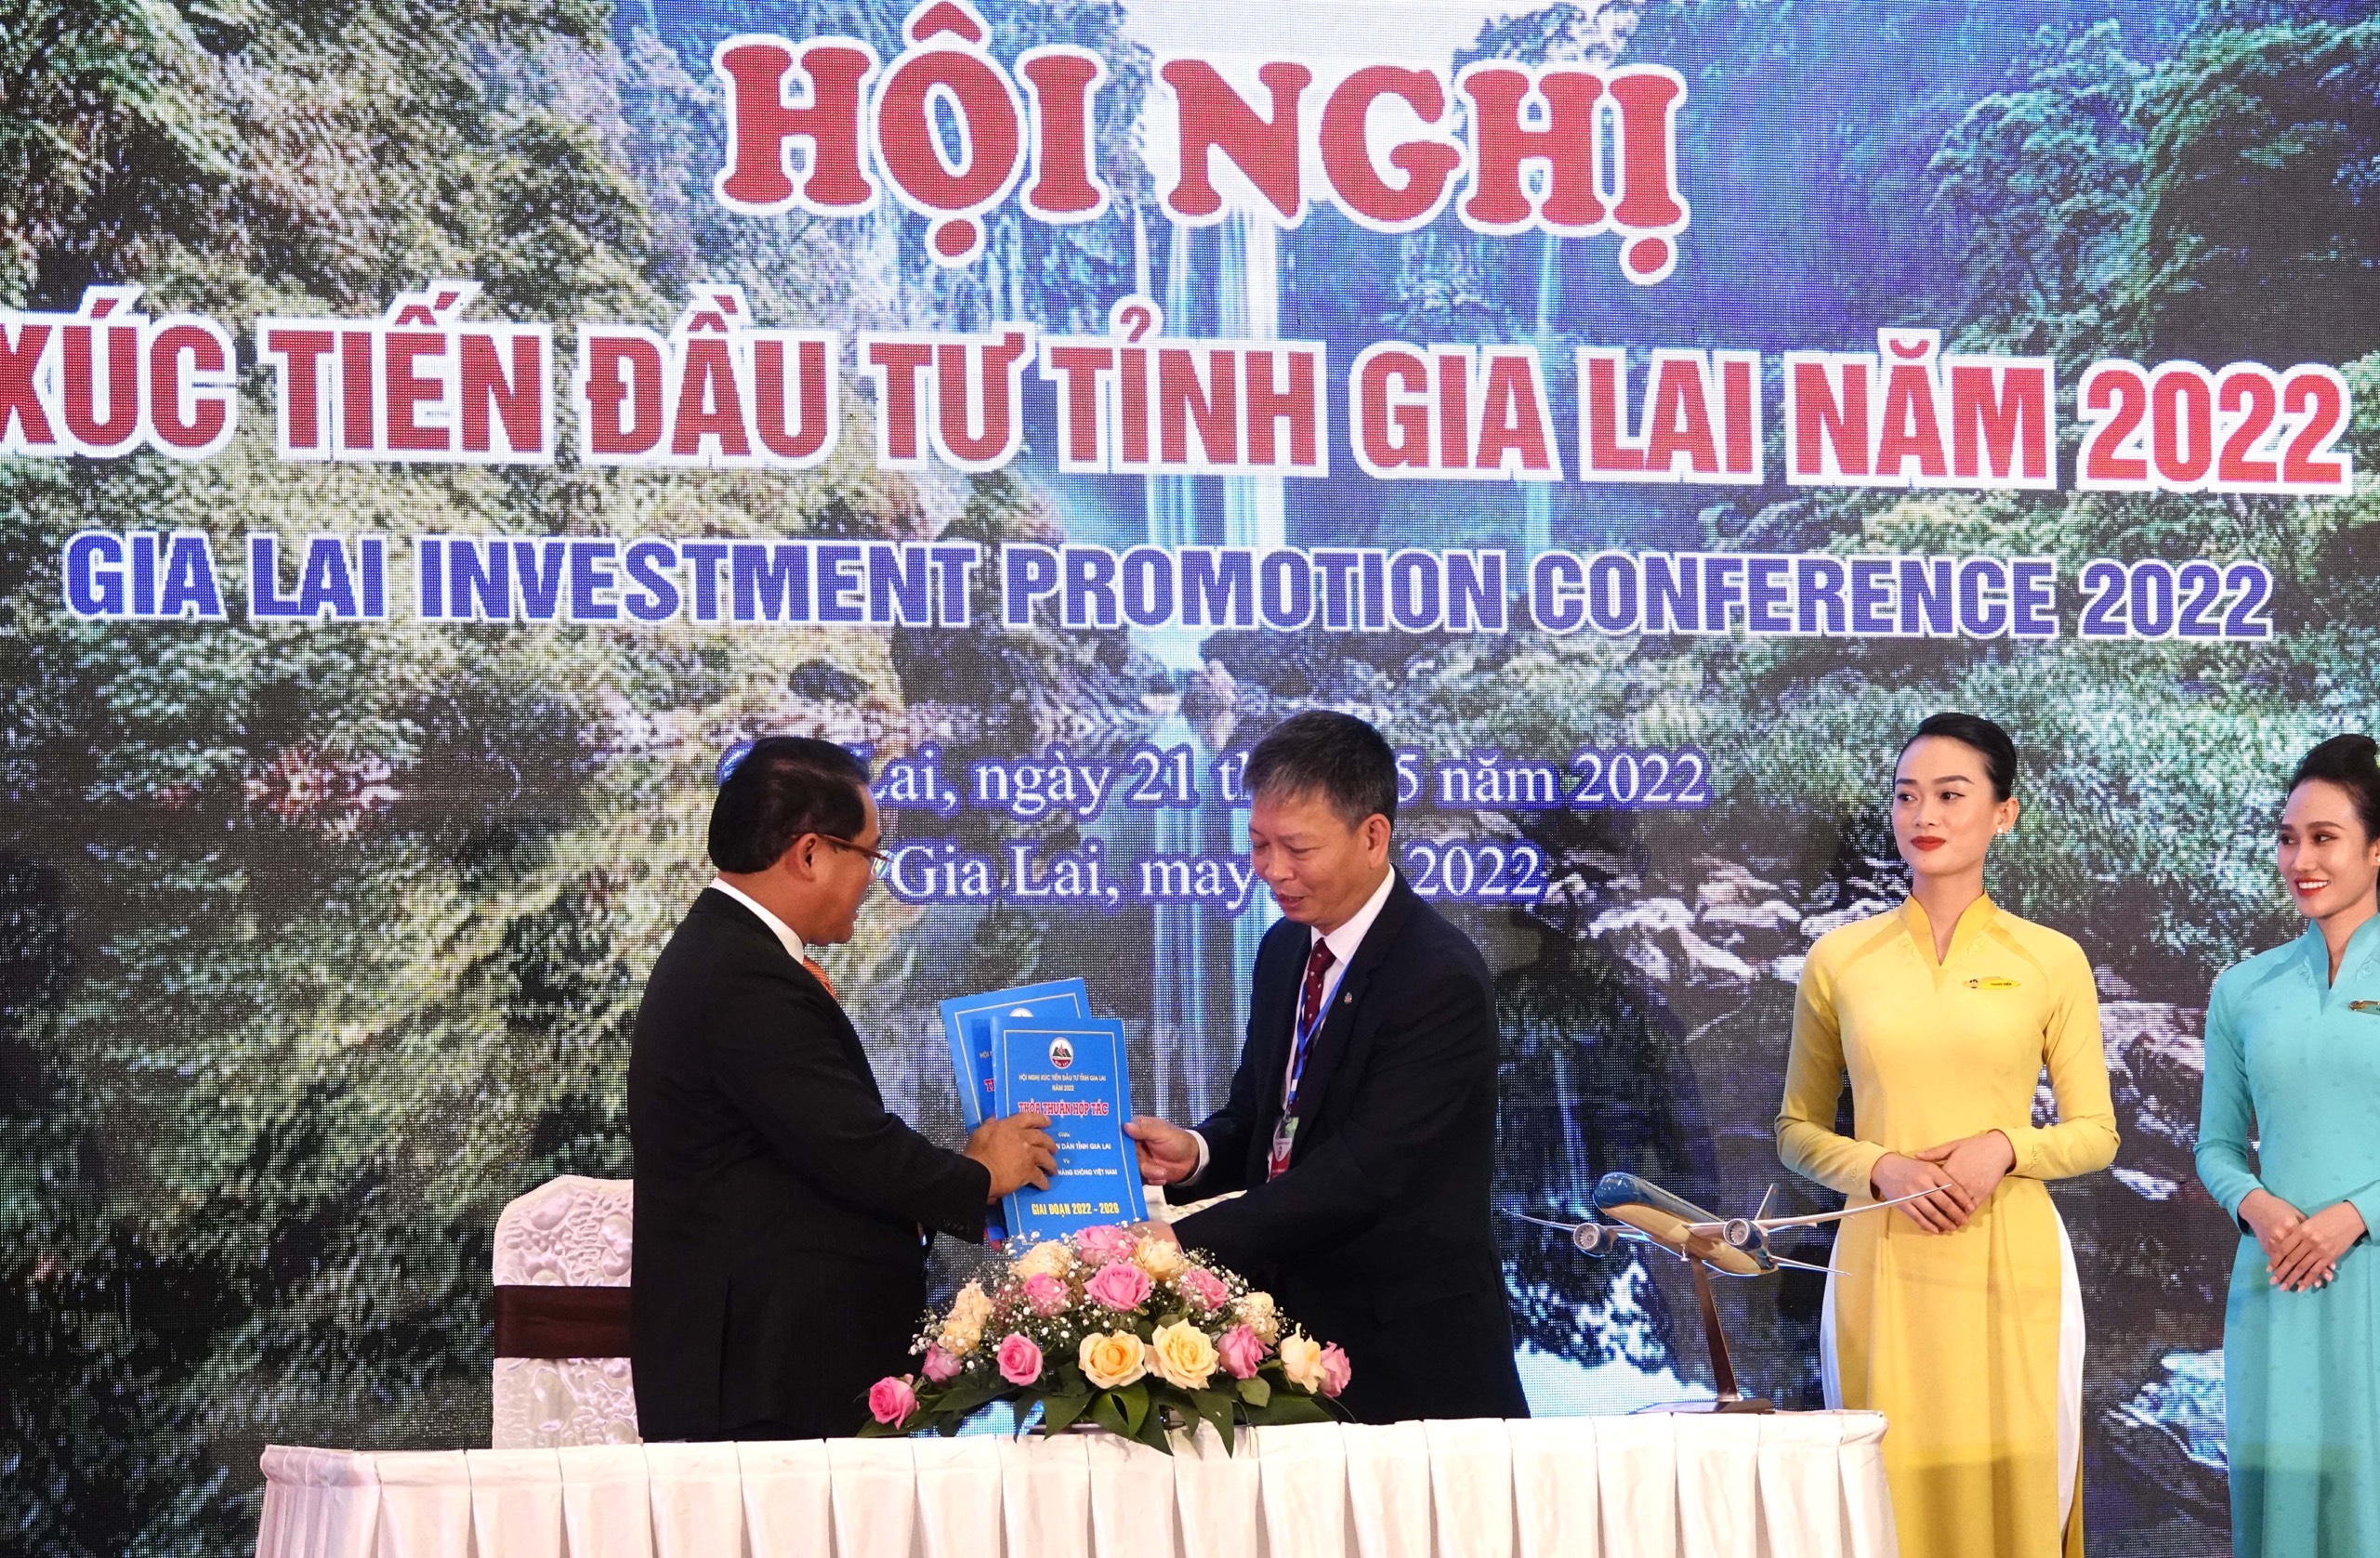 Vietnam Airlines và tỉnh Gia Lai chính thức ký kết thỏa thuận hợp tác toàn diện giai đoạn 2022 - 2026